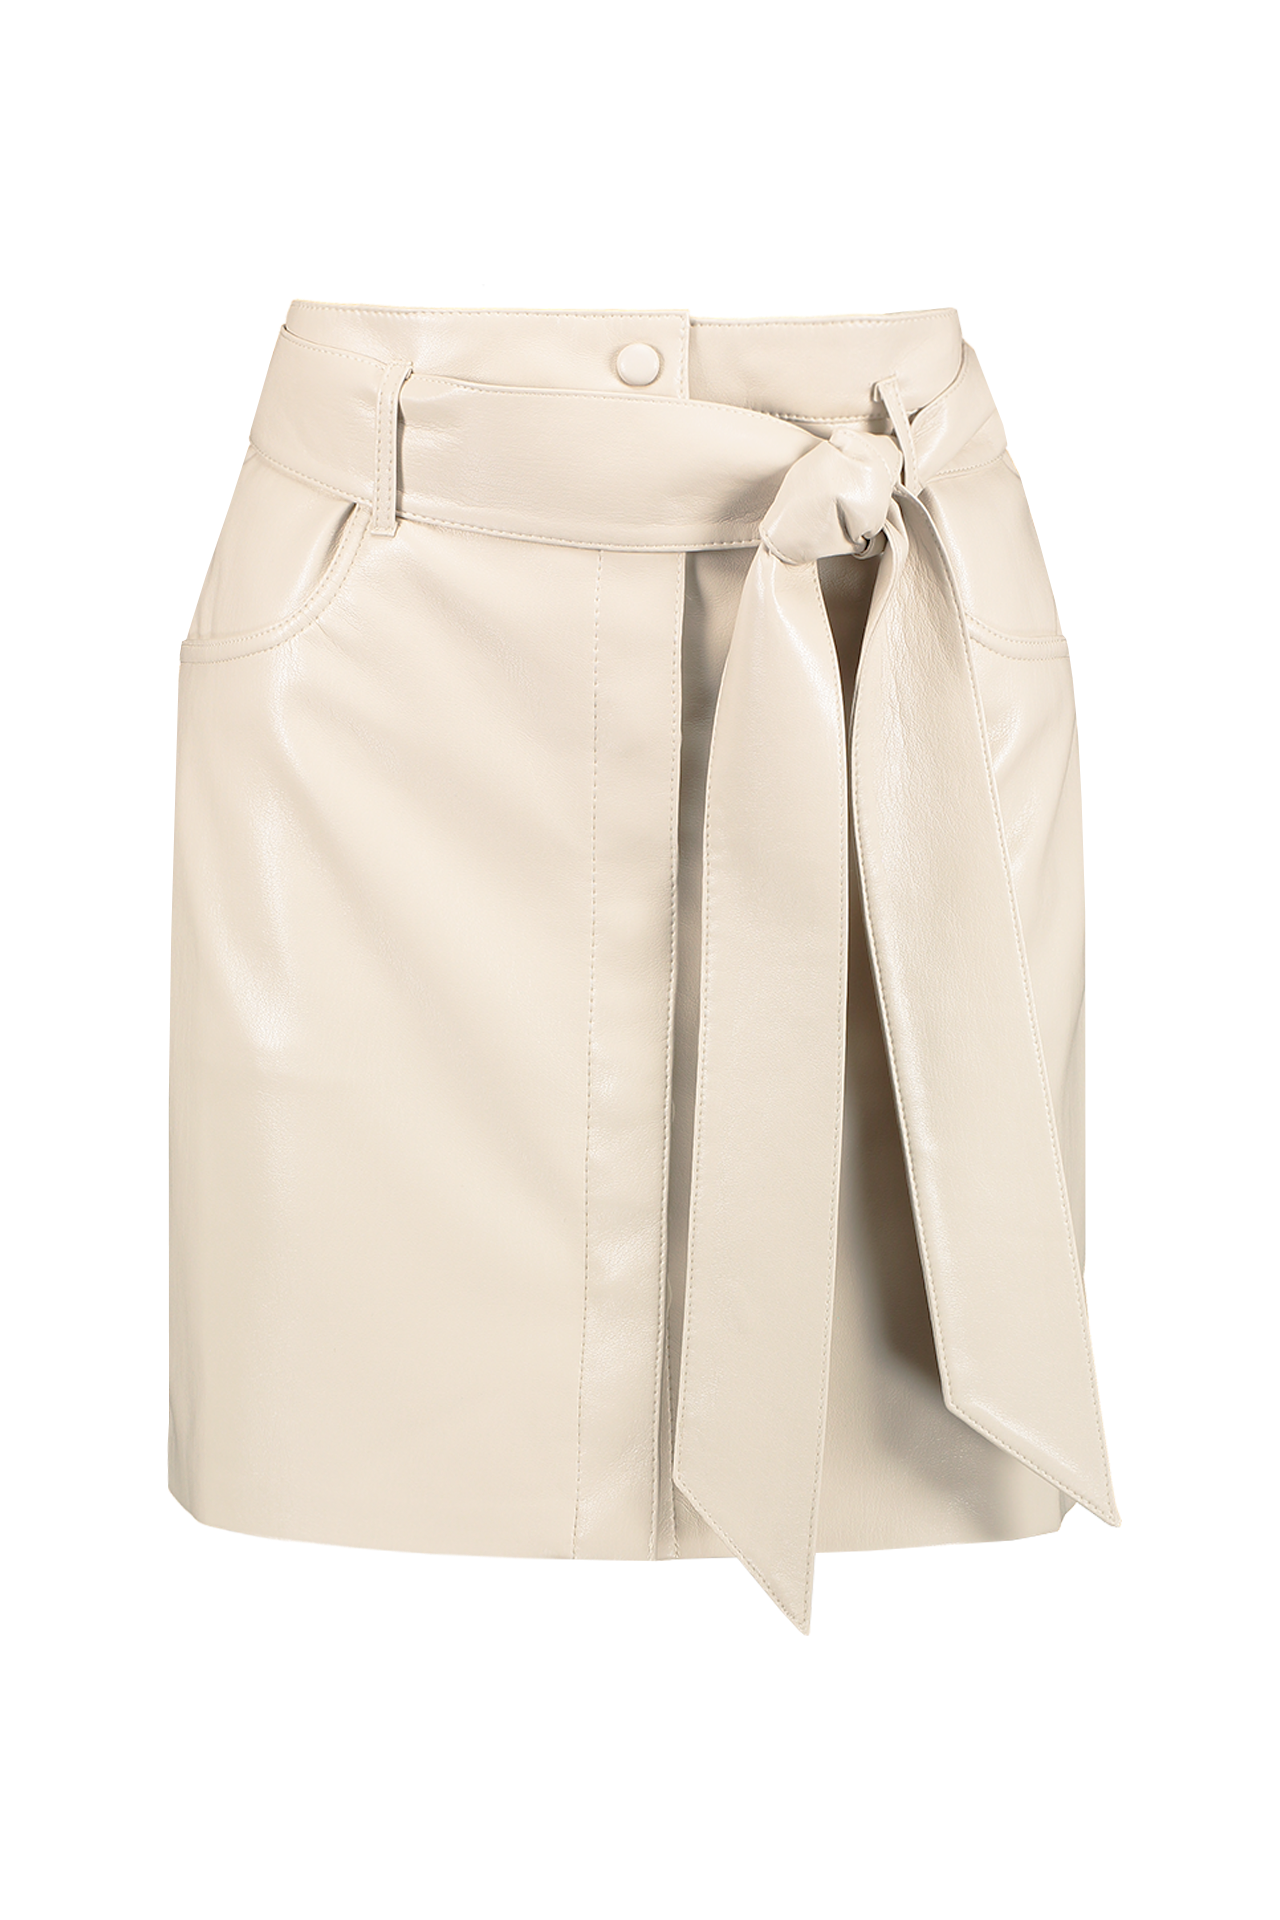 Nanushka Meda Skirt Creme Front Mannequin Image (6595768647795)